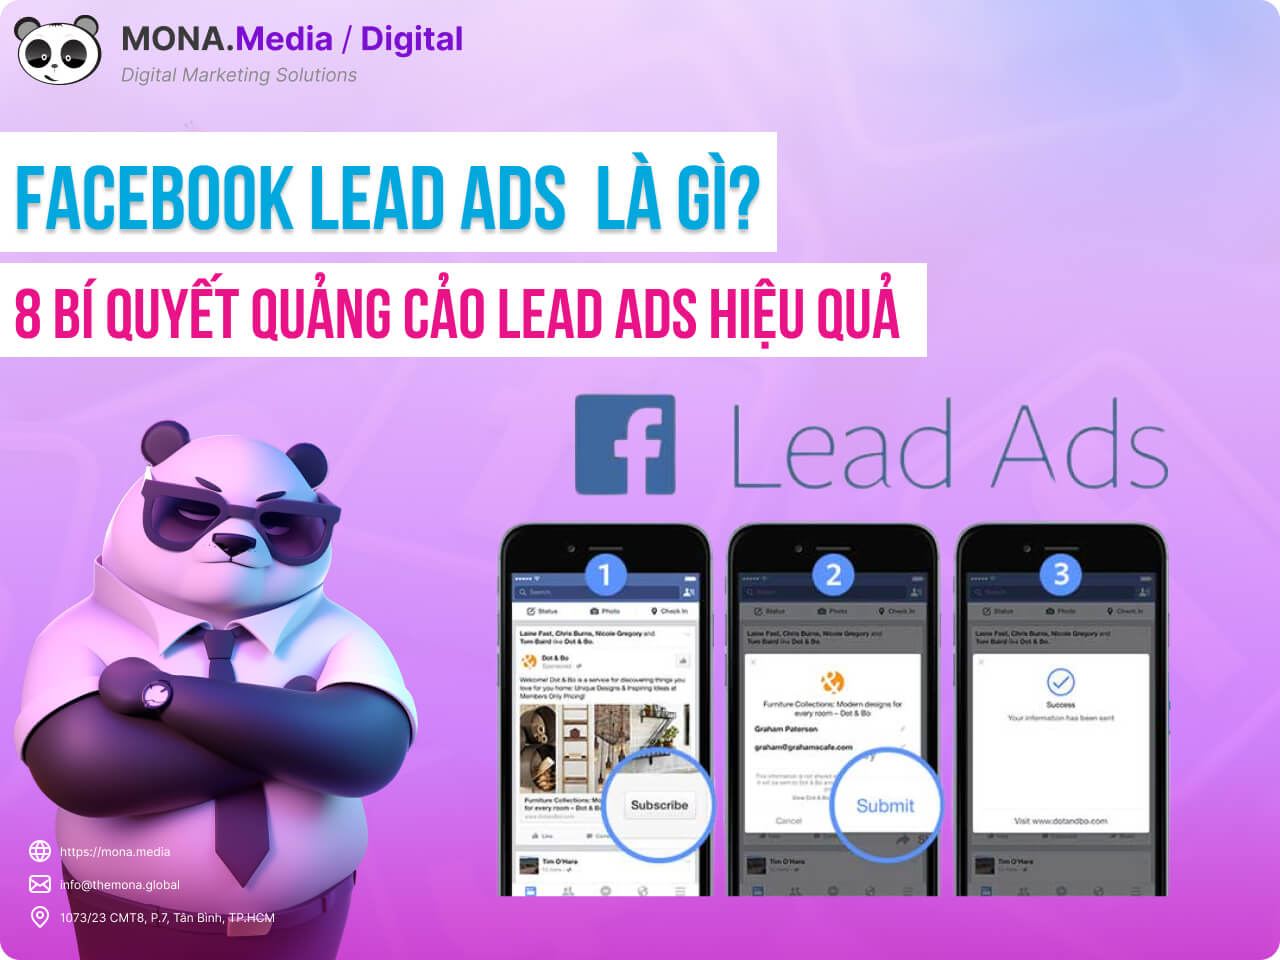 Facebook Lead Ads là gì